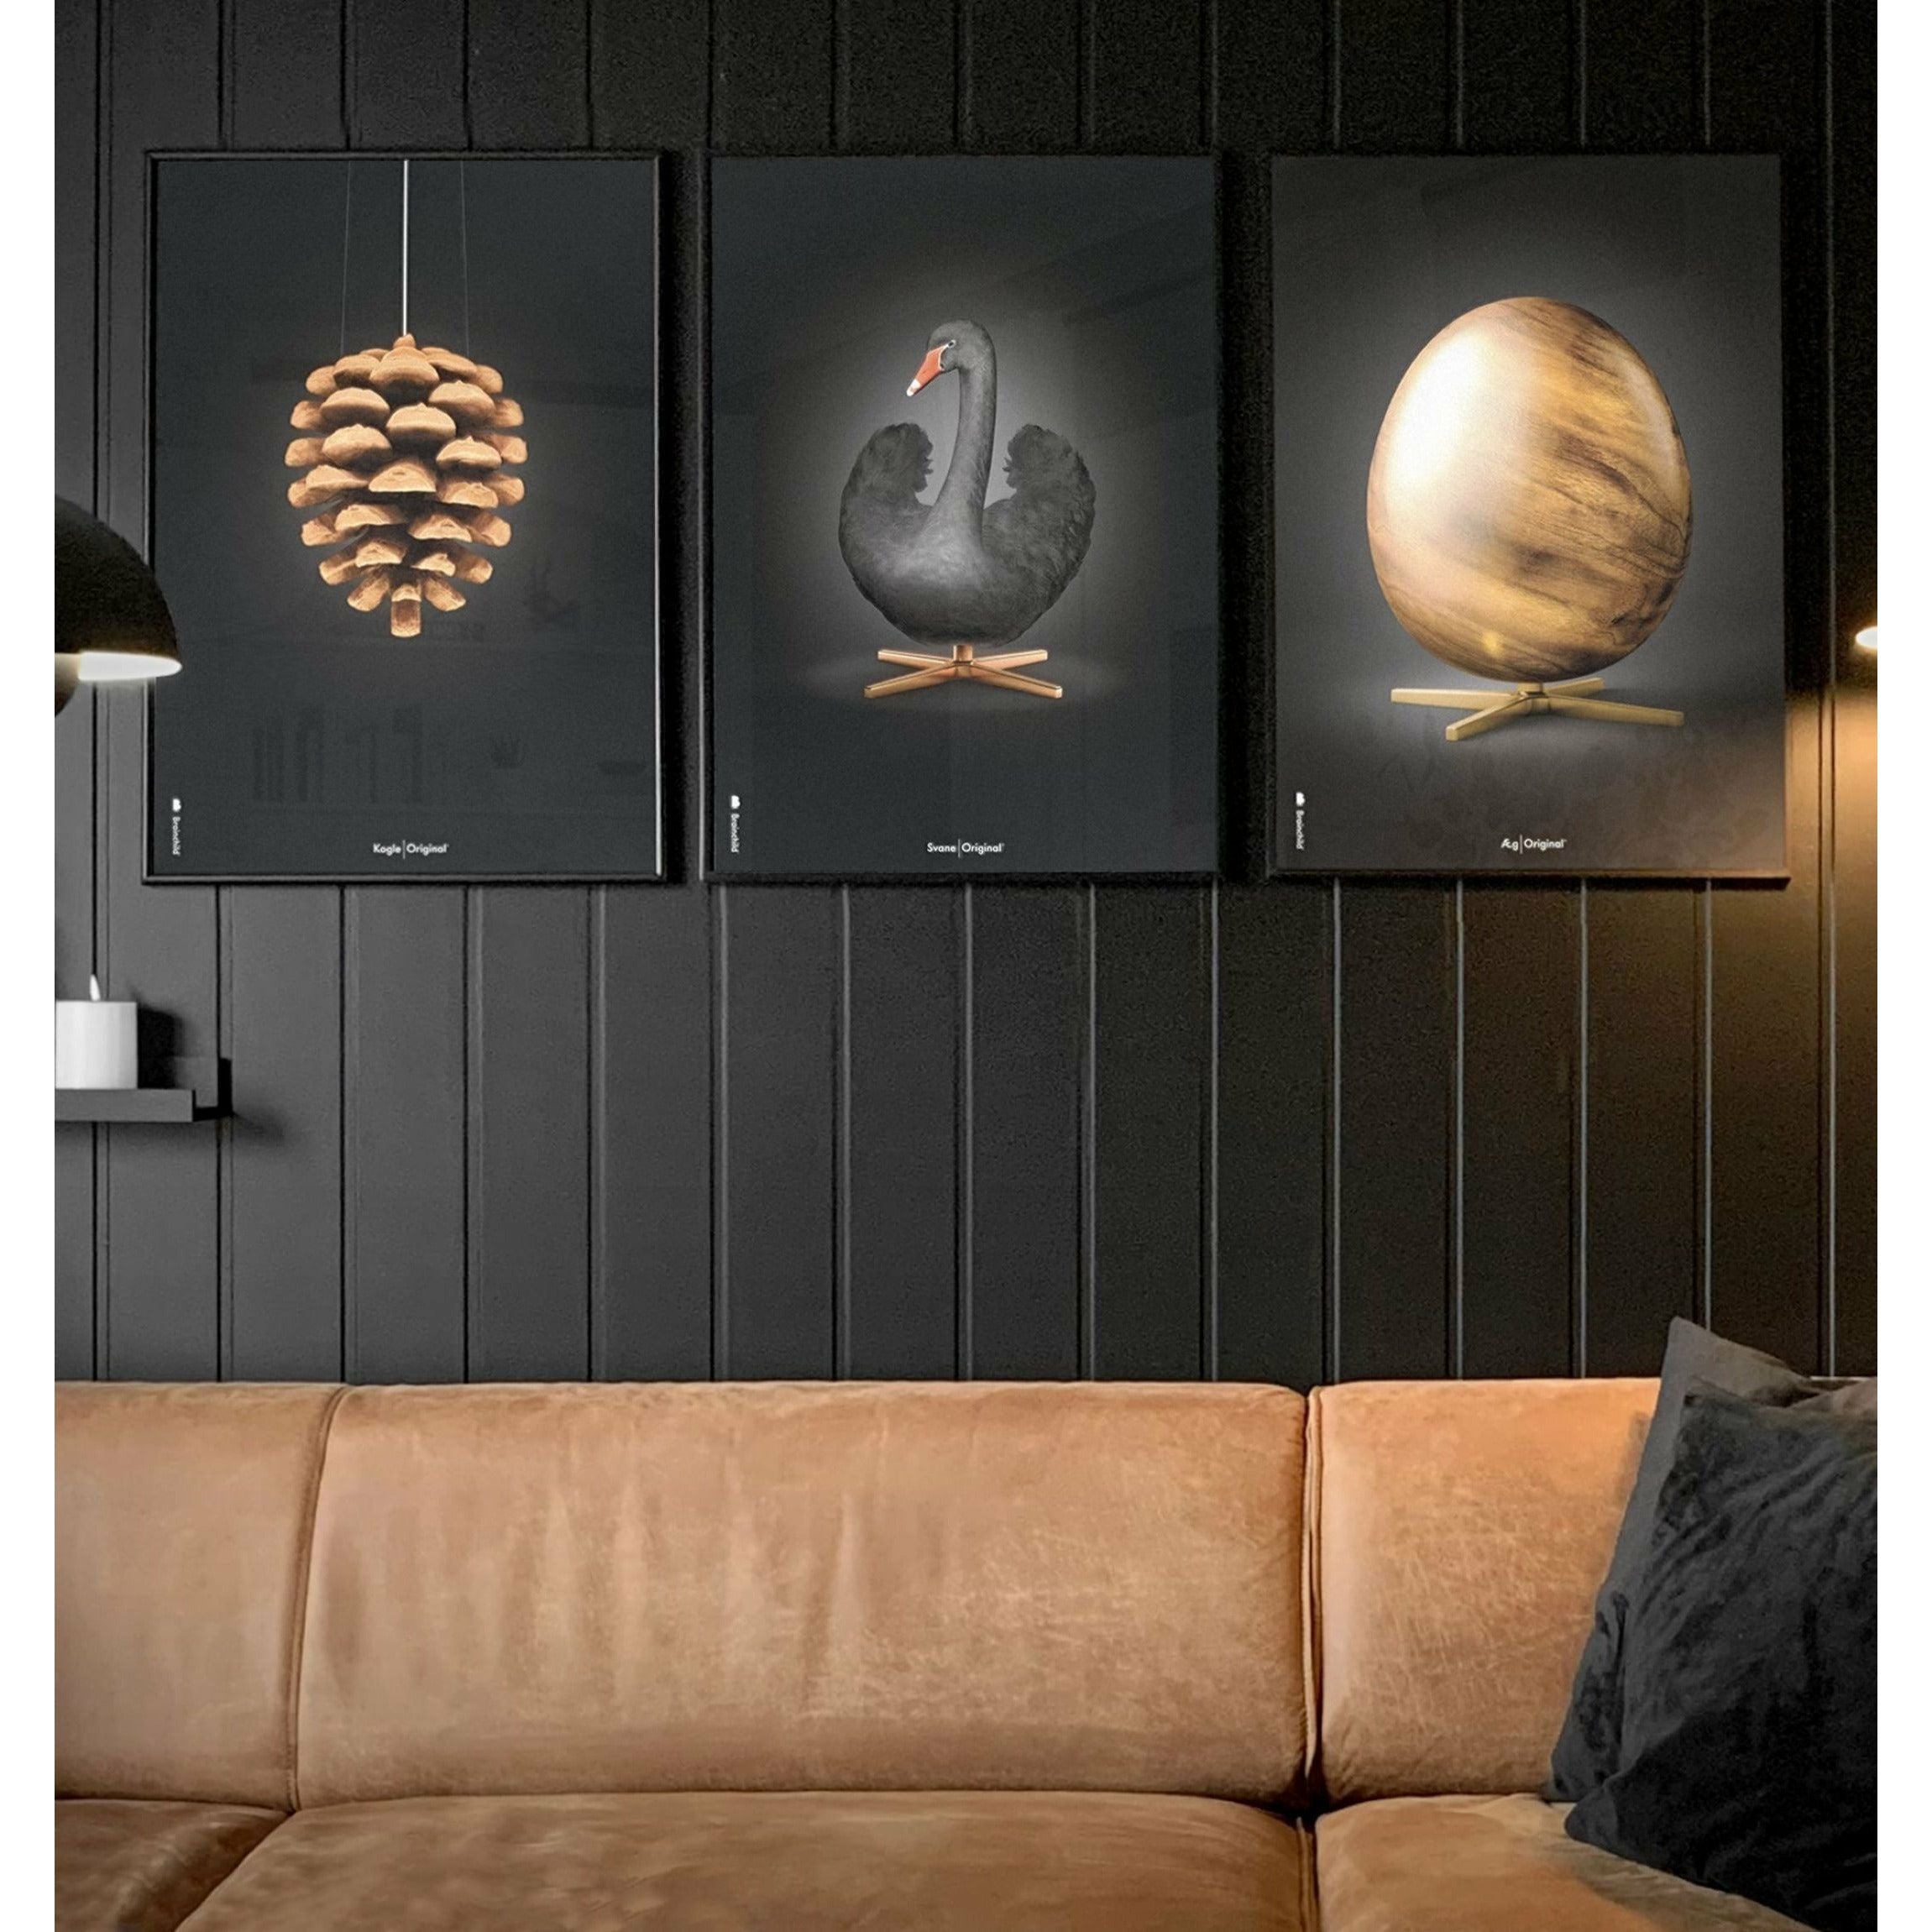 Brainchild Pine Cone Classic Poster, frame gemaakt van licht hout A5, zwarte achtergrond